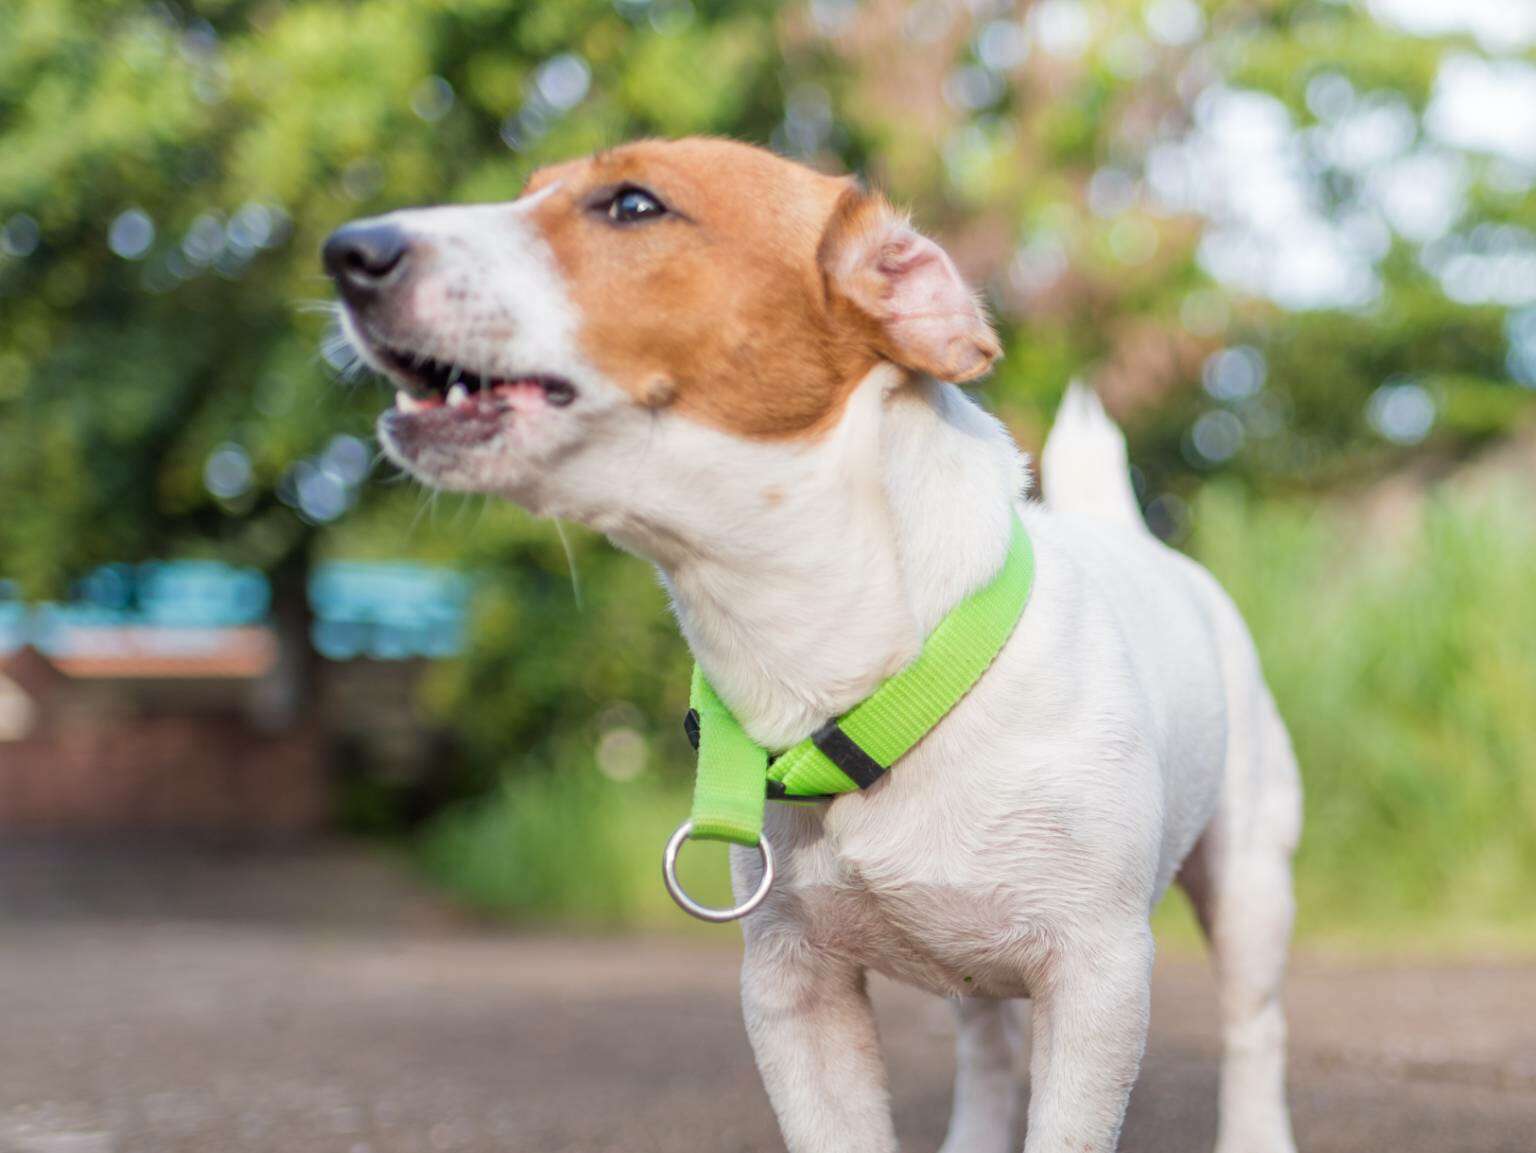 A puppy, wearing a green collar, barking